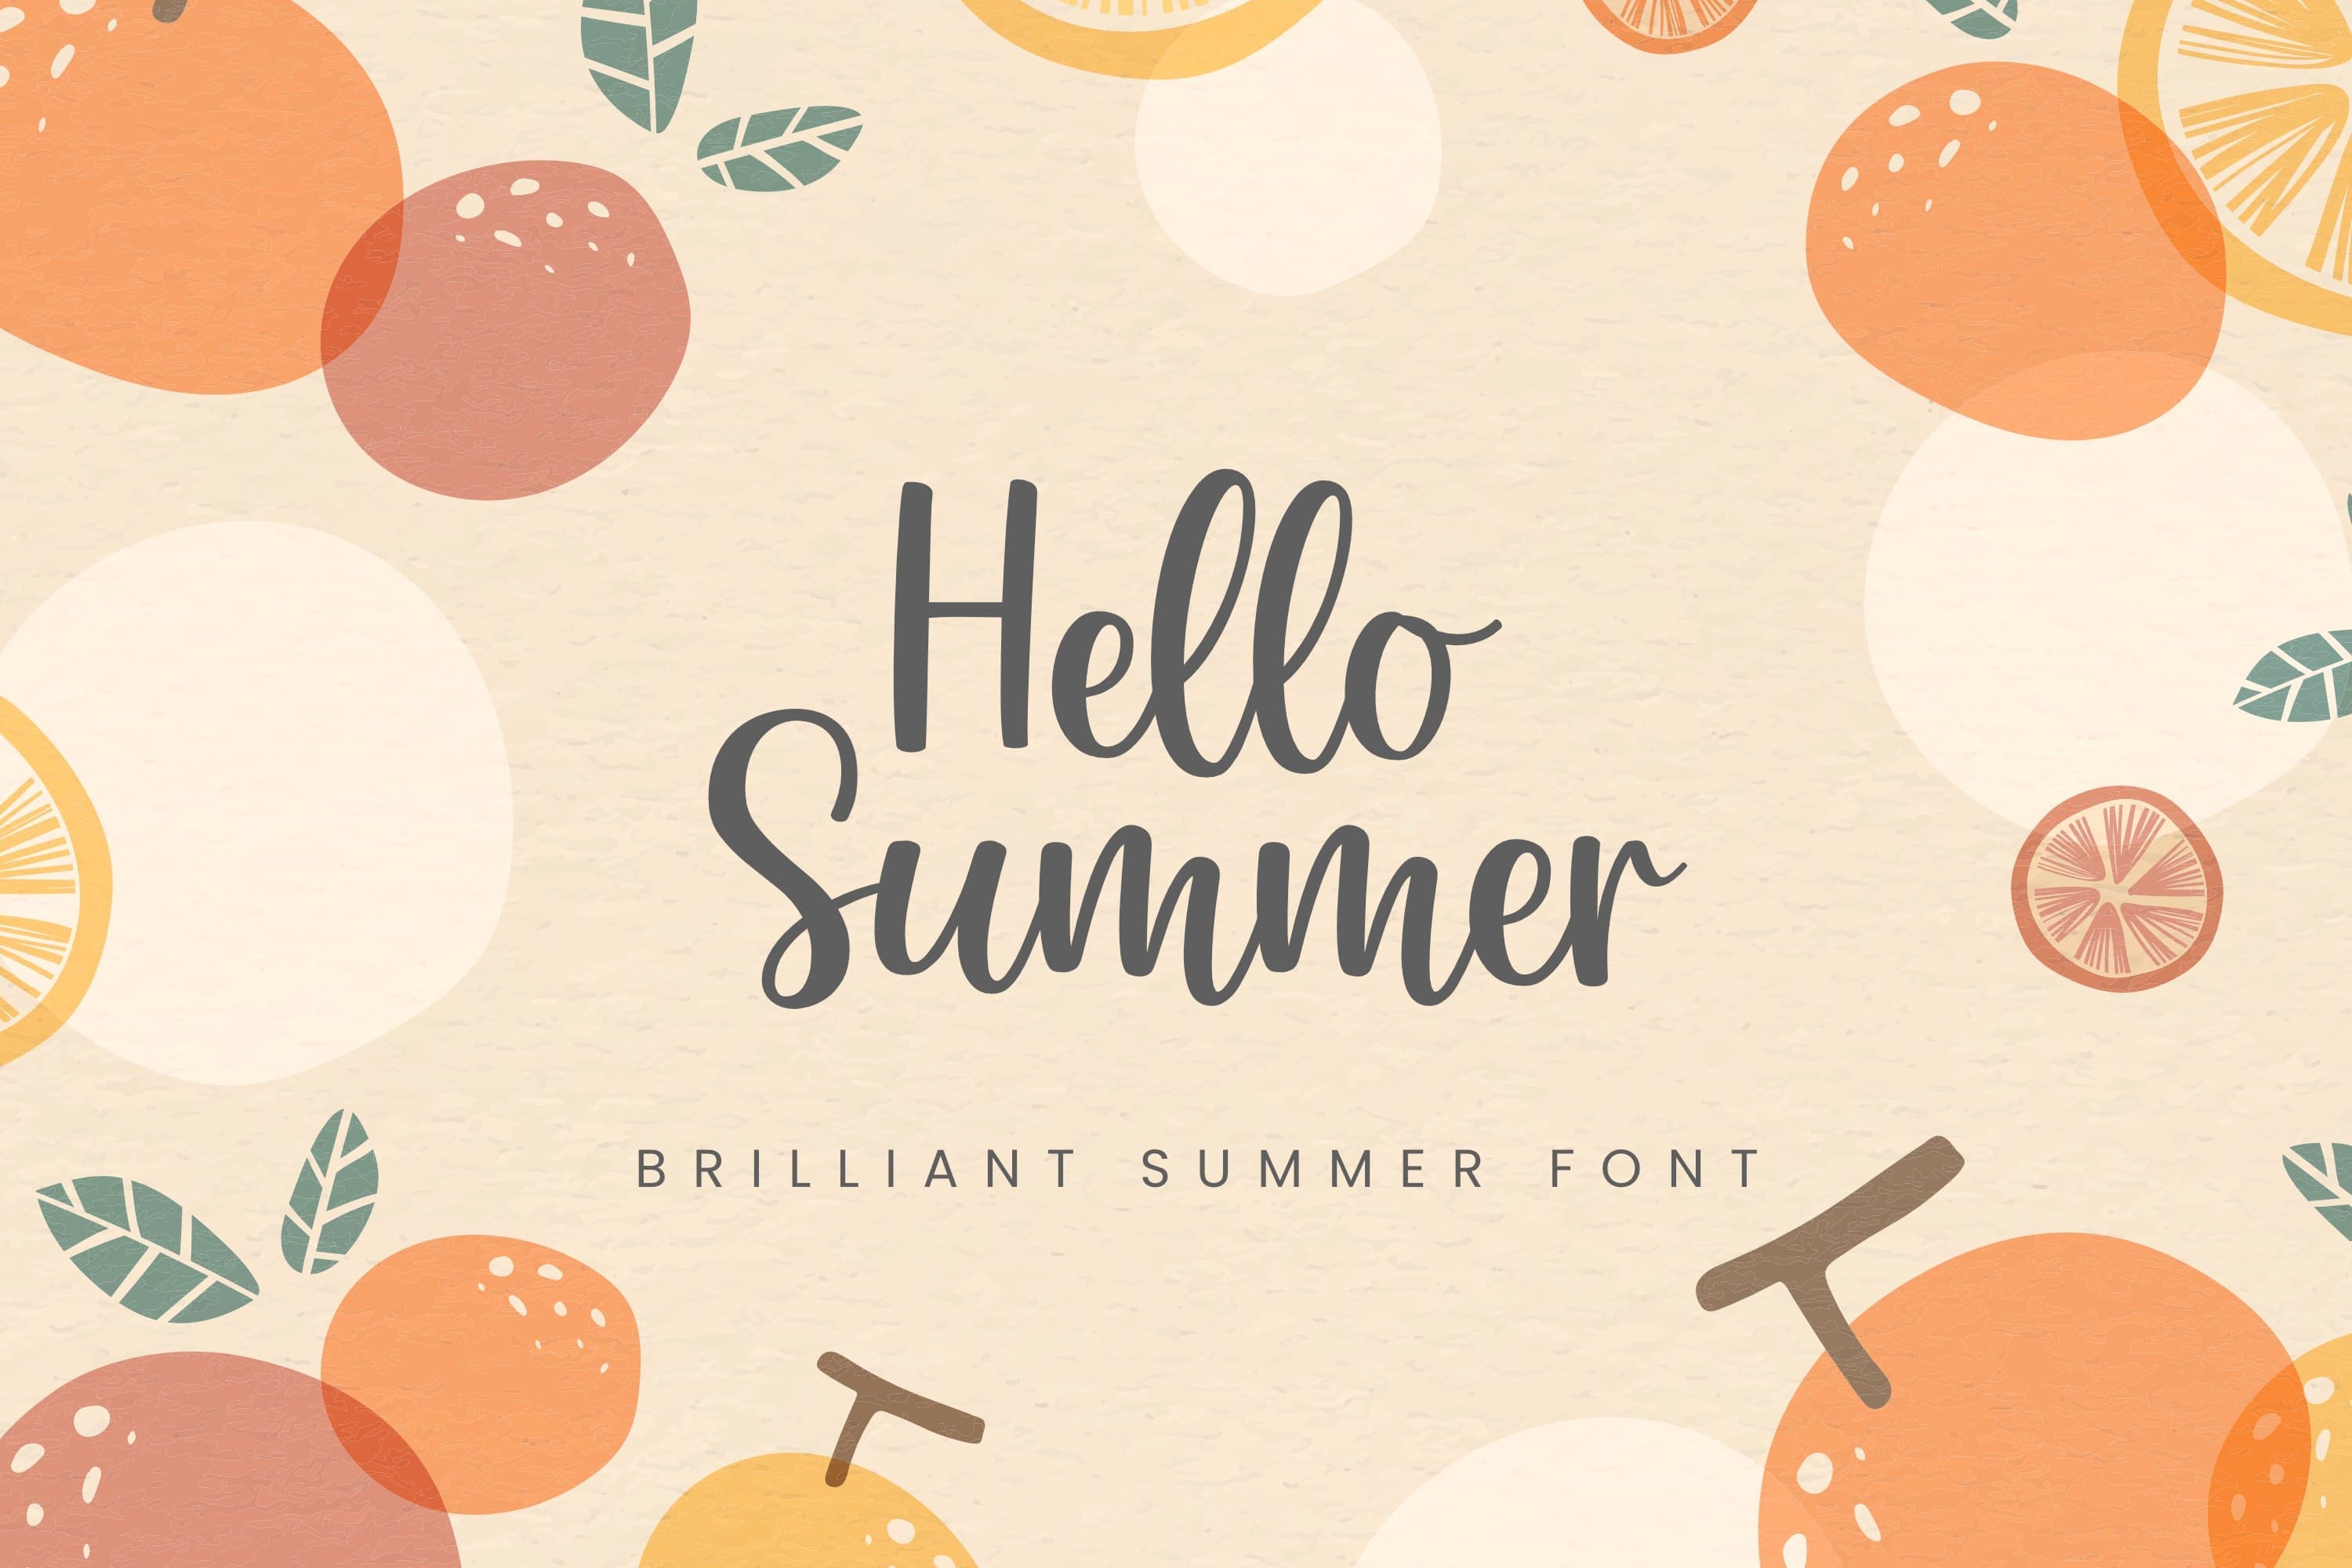 Bright summer, shiny summer font on orange background.